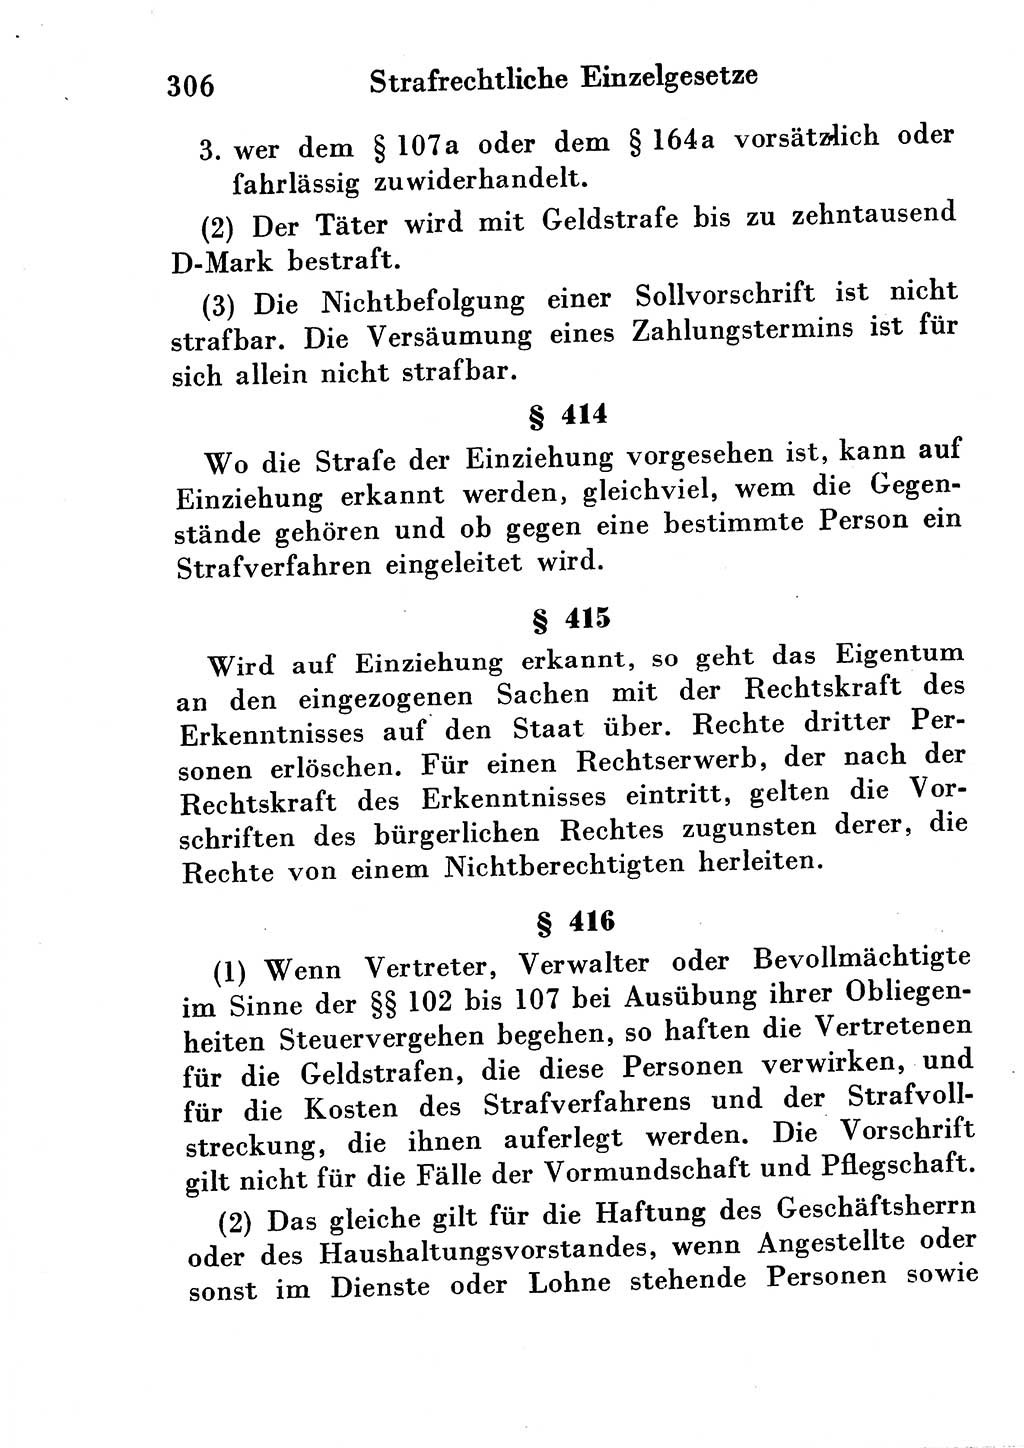 Strafgesetzbuch (StGB) und andere Strafgesetze [Deutsche Demokratische Republik (DDR)] 1954, Seite 306 (StGB Strafges. DDR 1954, S. 306)